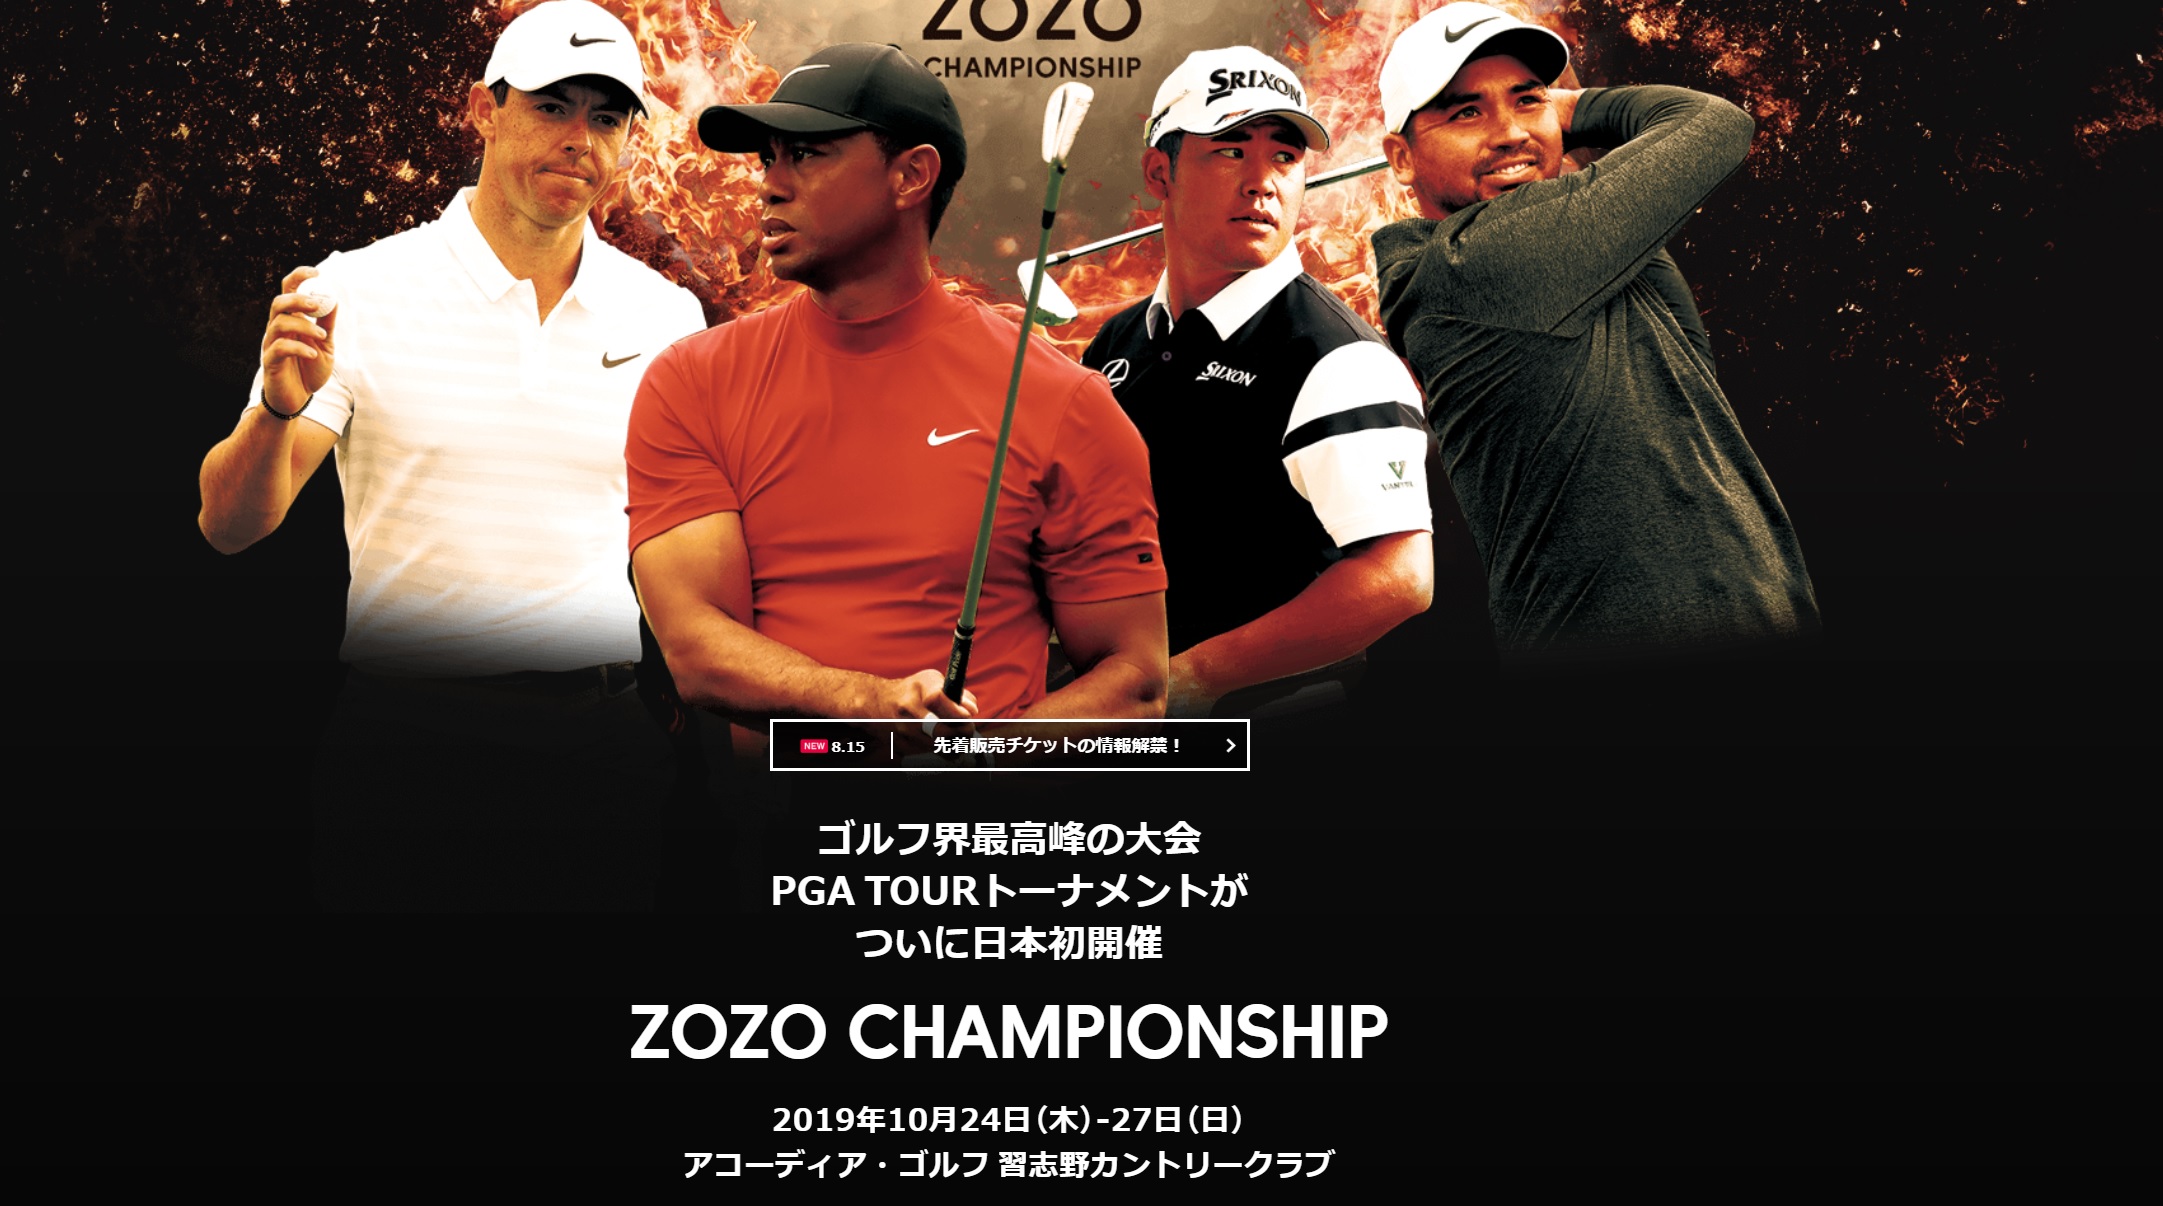 ZOZO CHANPIONSHIP ―第3弾のチケット販売に向けて― – ゴルフなび